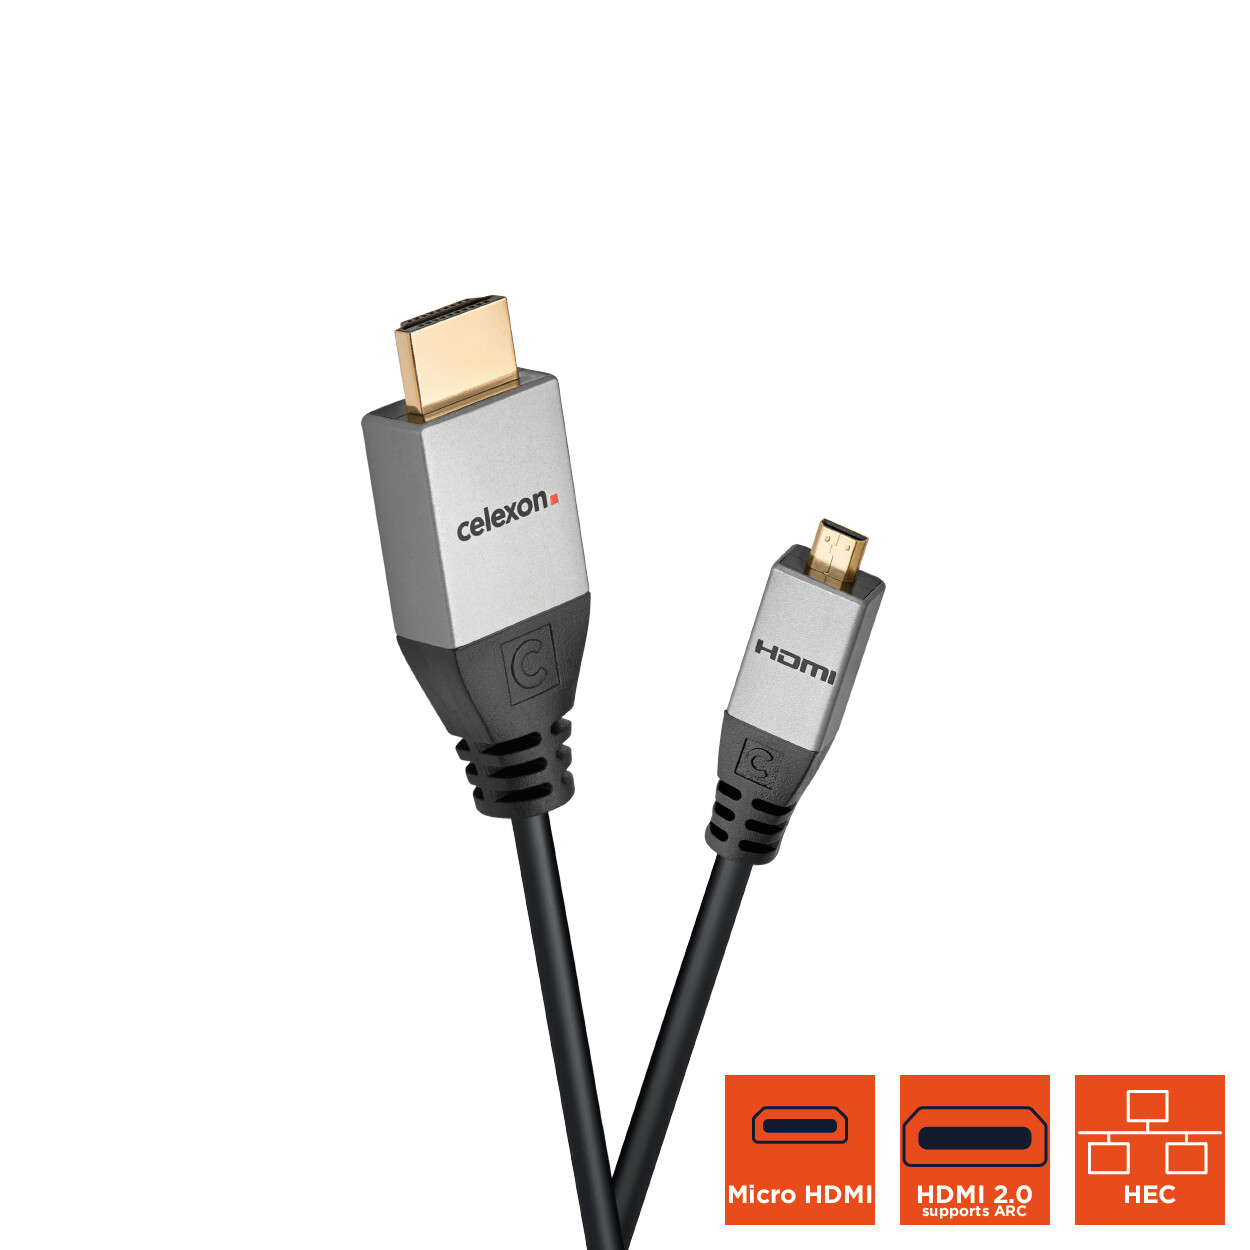 Câble HDMI vers micro HDMI avec Ethernet 2.0a/b 4K celexon PRO 3 m